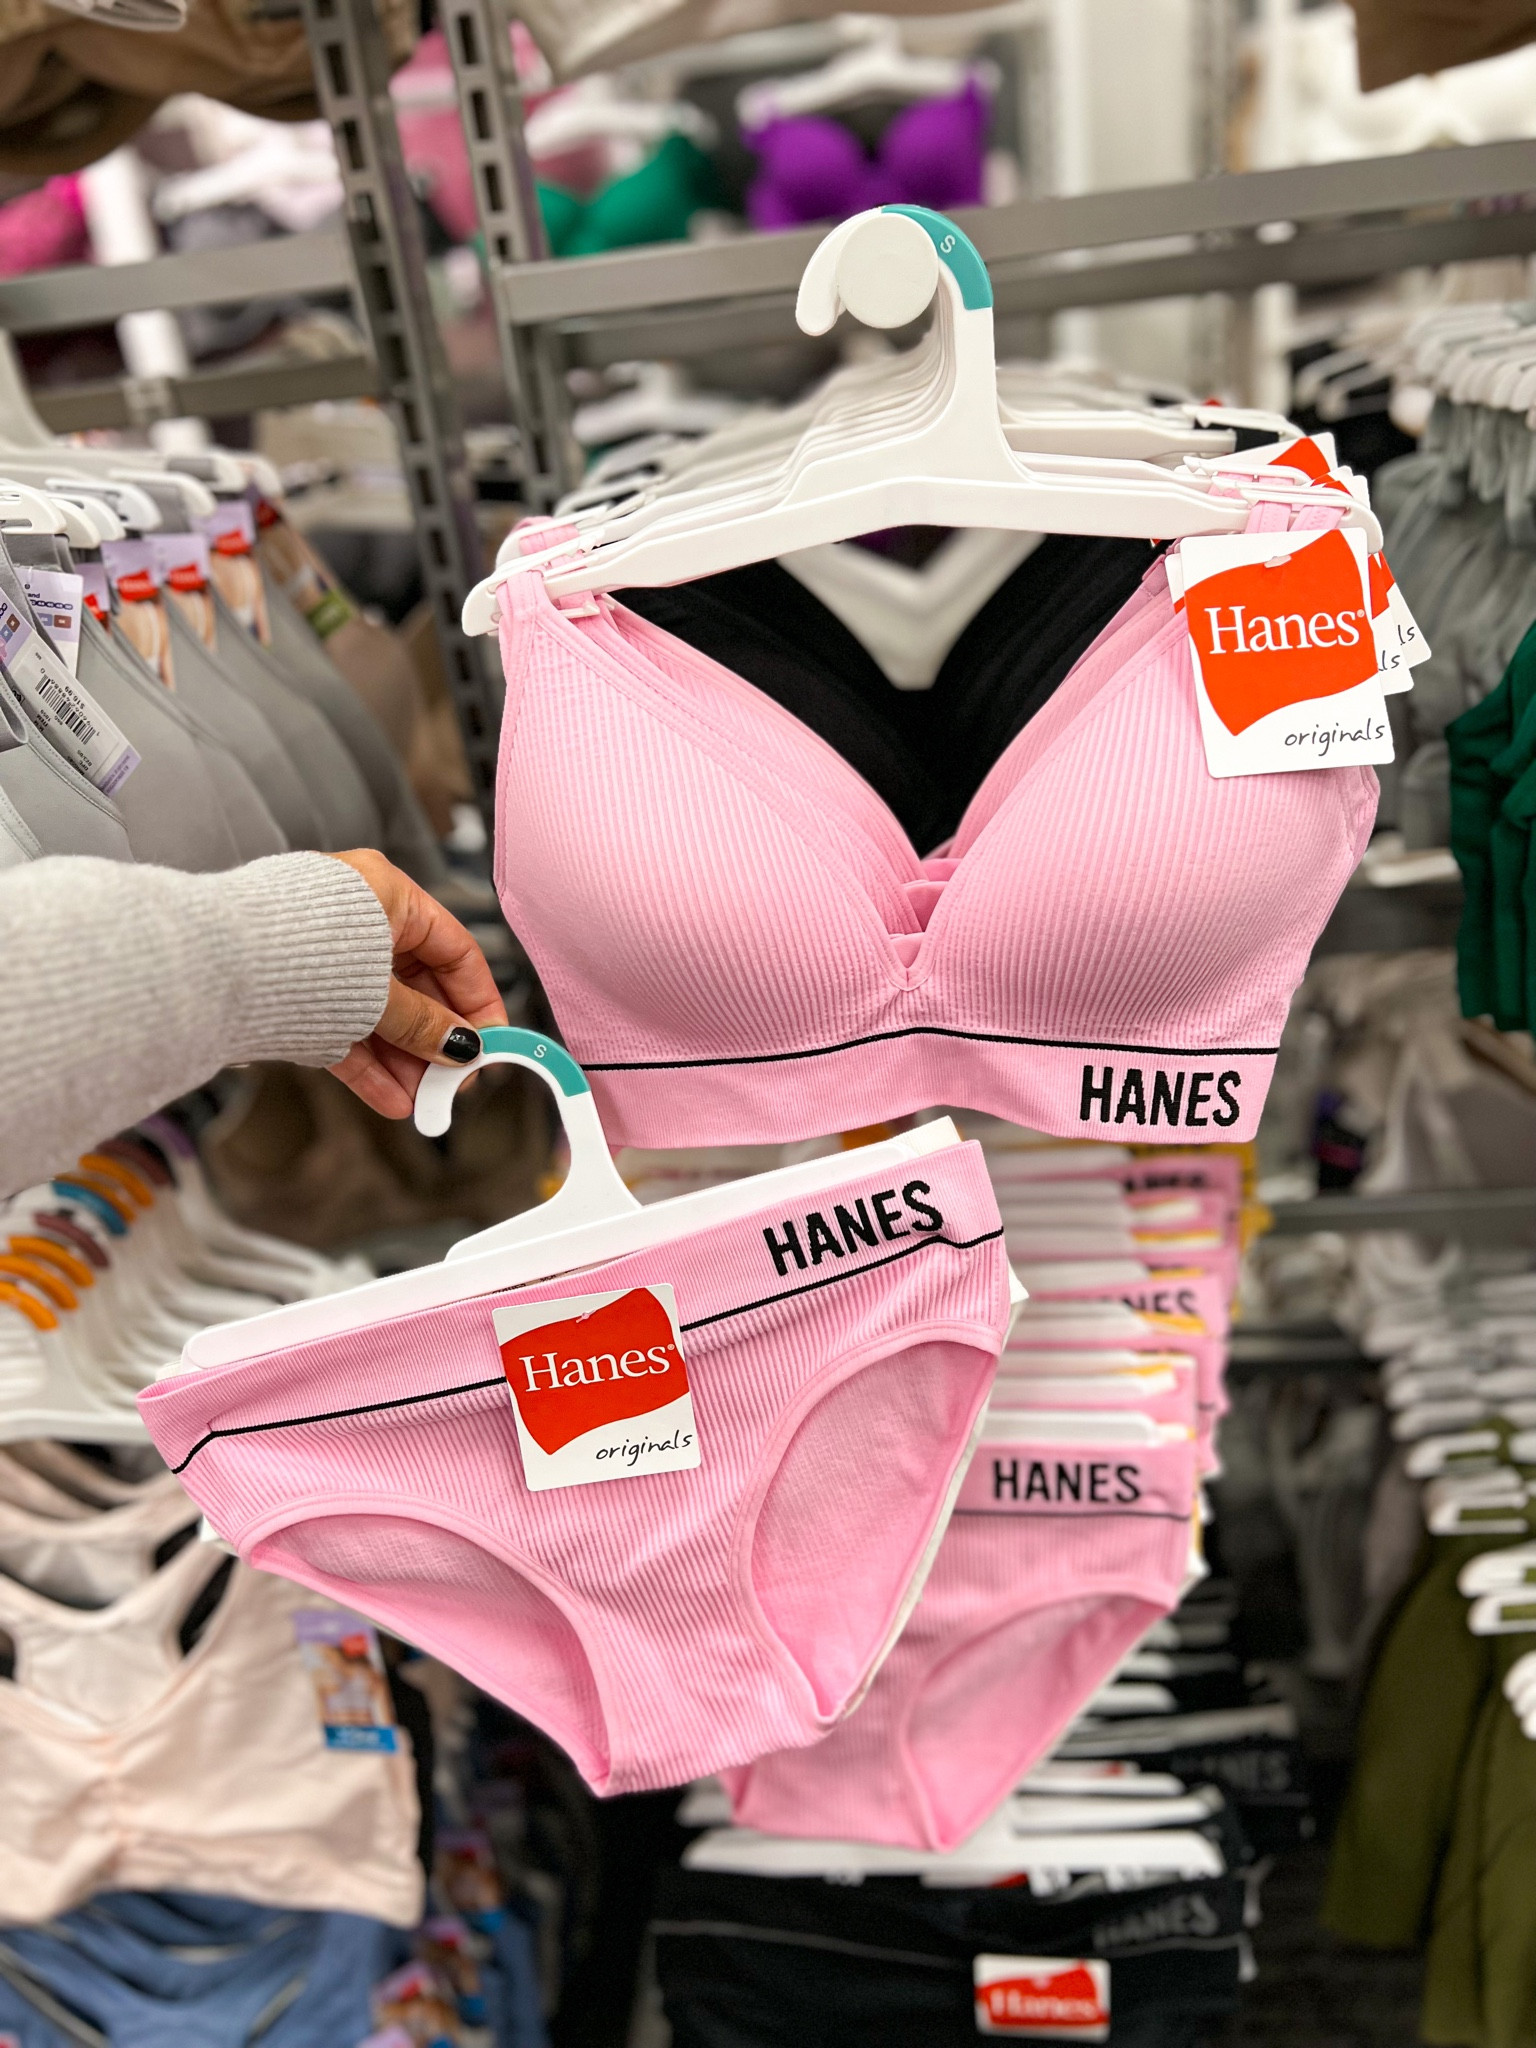 Hanes Girls' 2pk Underwire Bra - Pink/white 30 : Target